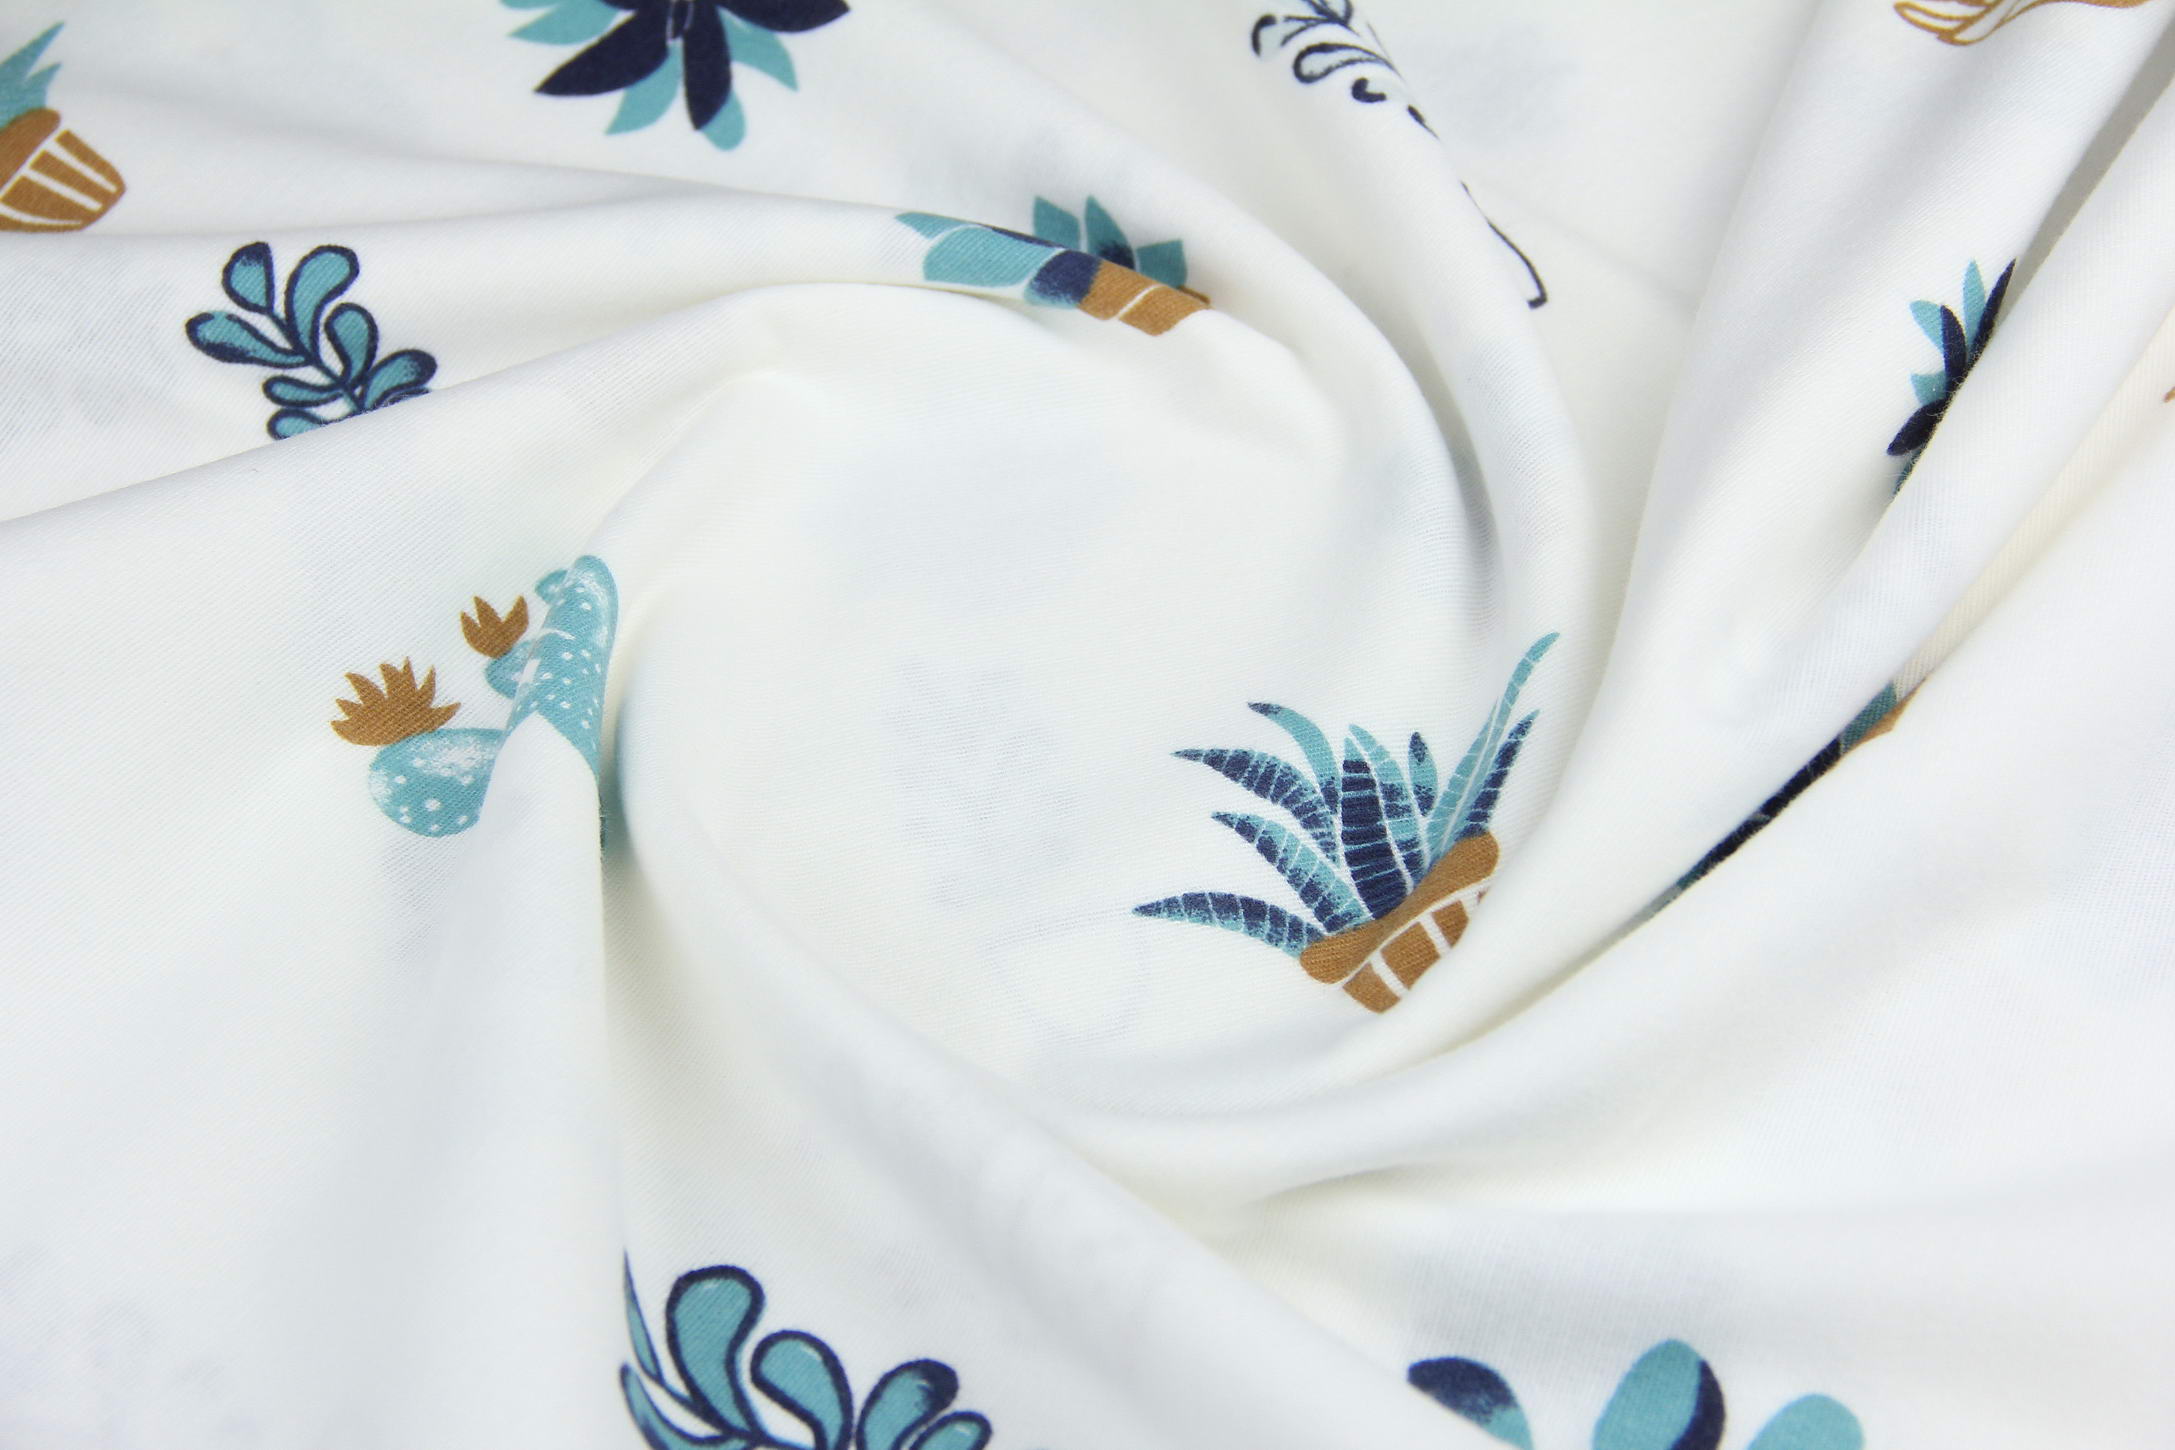 Цветы из ткани: красивые фиалки в горшочке